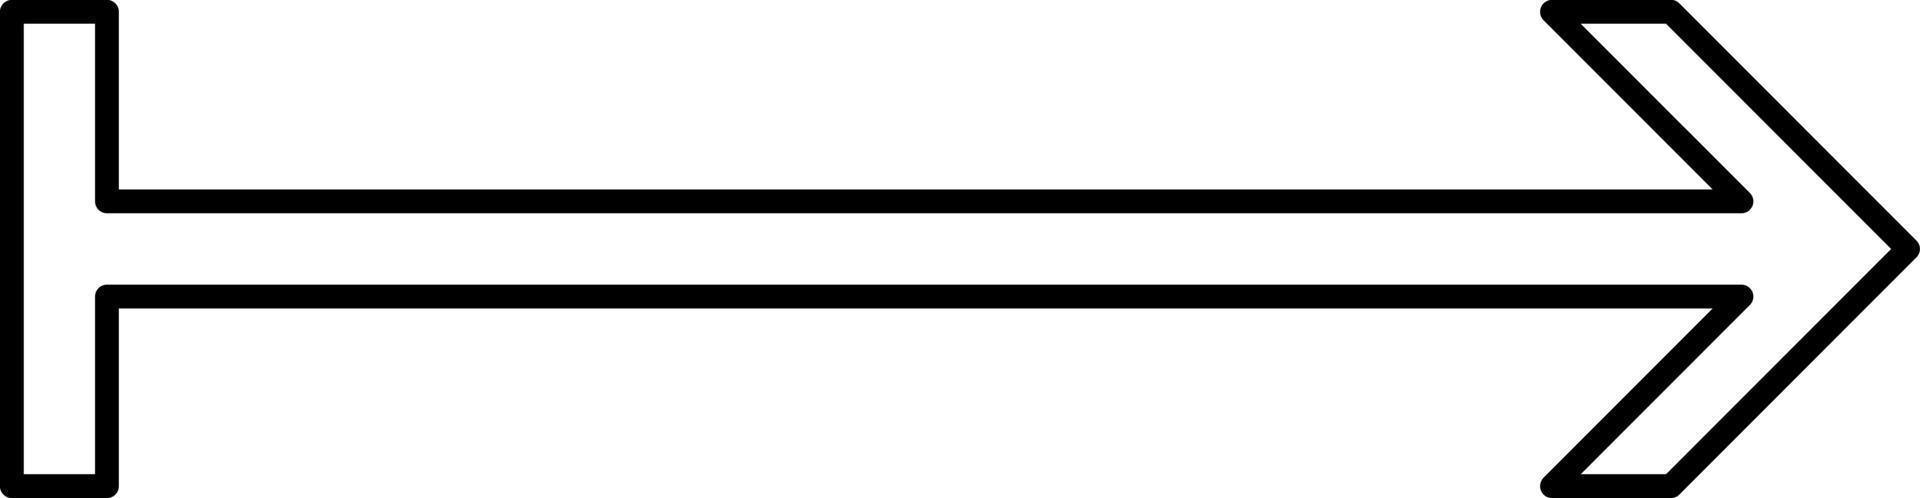 flèche vers la droite avec une queue en ligne droite, illustration, vecteur sur fond blanc.